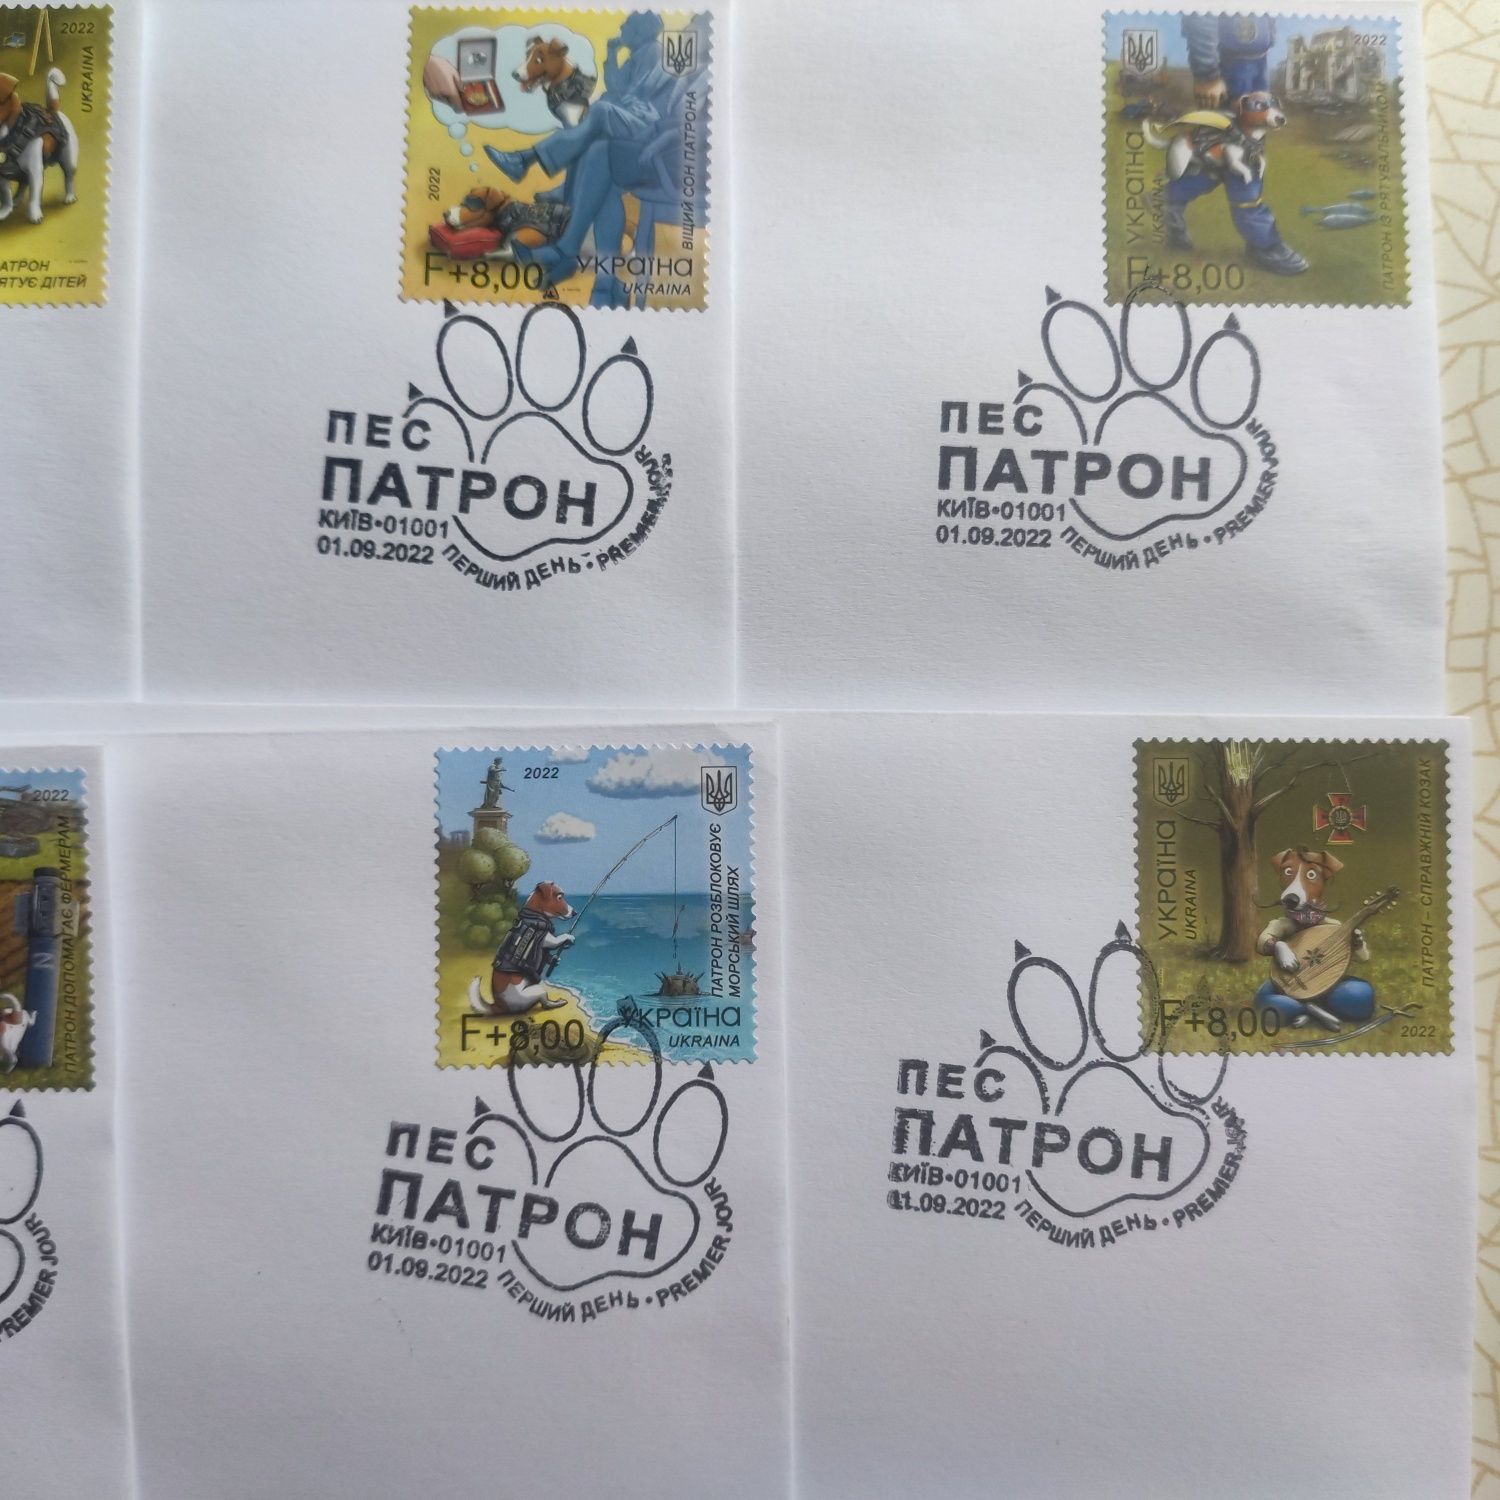 СГ (Спецгашение) марок ПЕС ПАТРОН г. Киев первый день